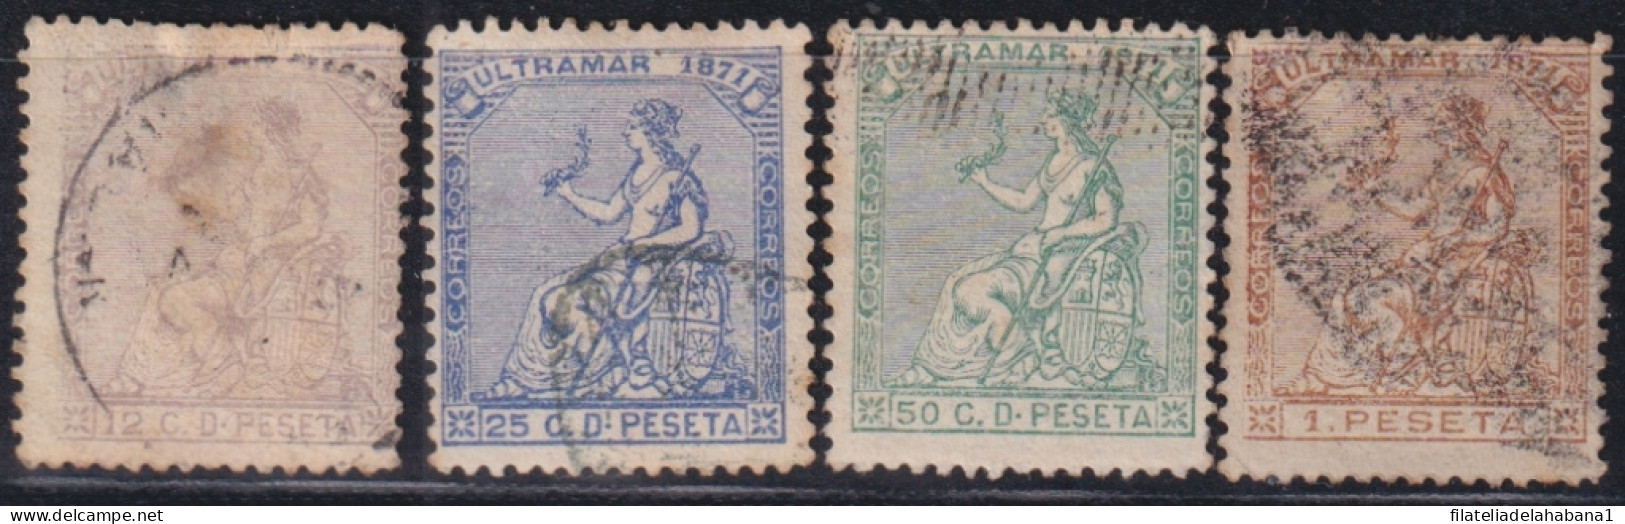 1871-136 CUBA ANTILLES SPAIN 1871 COMPLETE SET USED.  - Prefilatelia